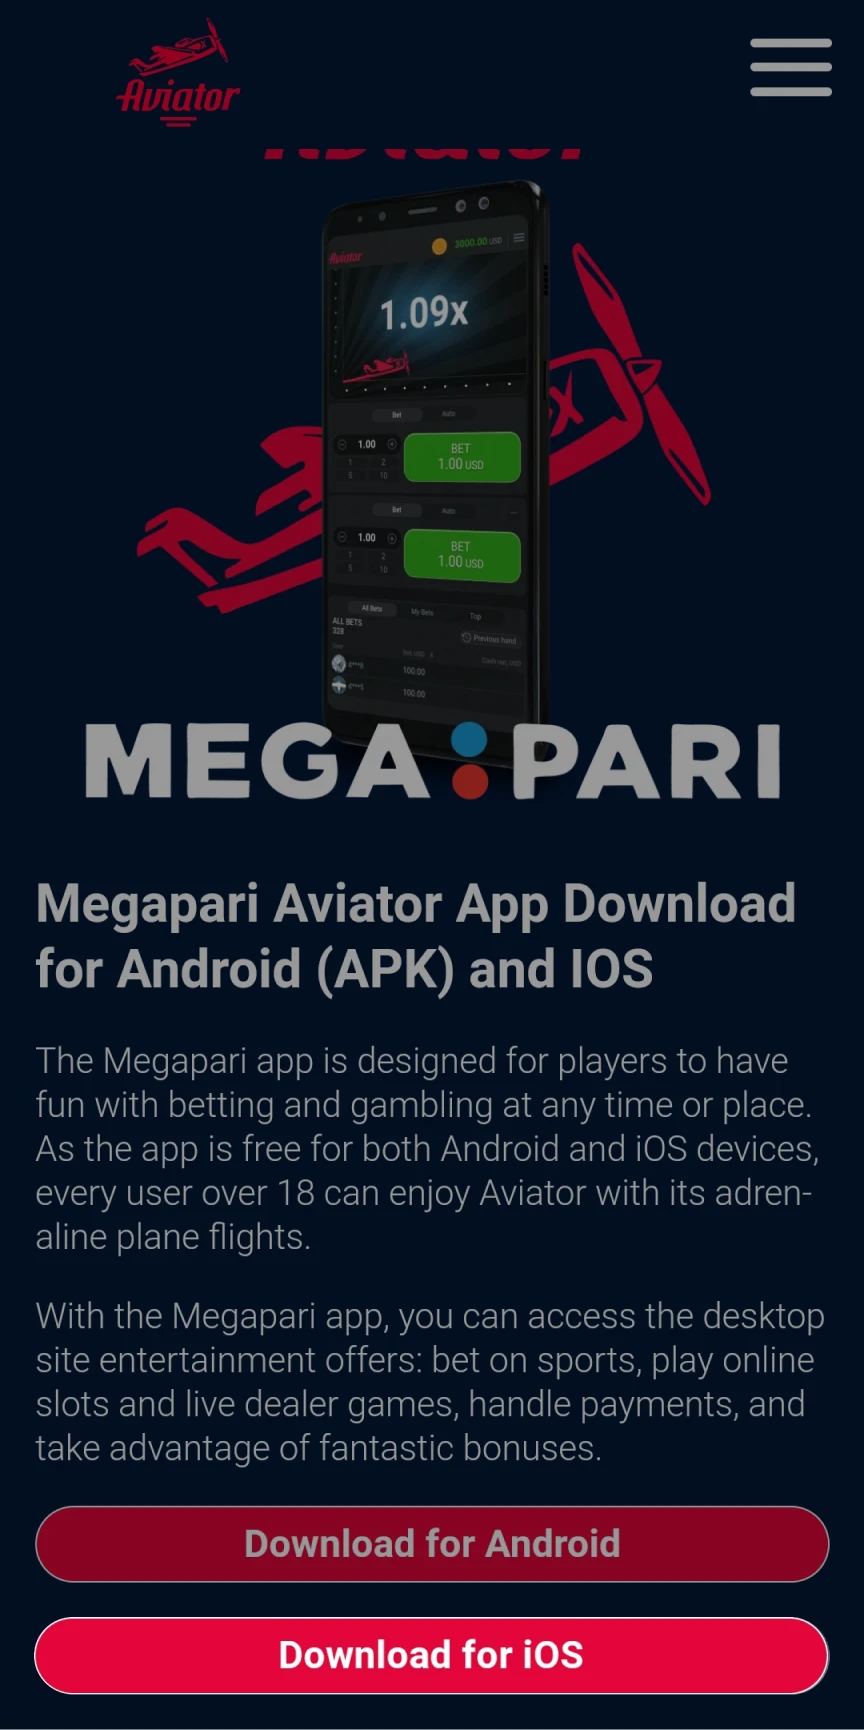 Acesse a página inicial do Megapari para baixar o app para iOS.